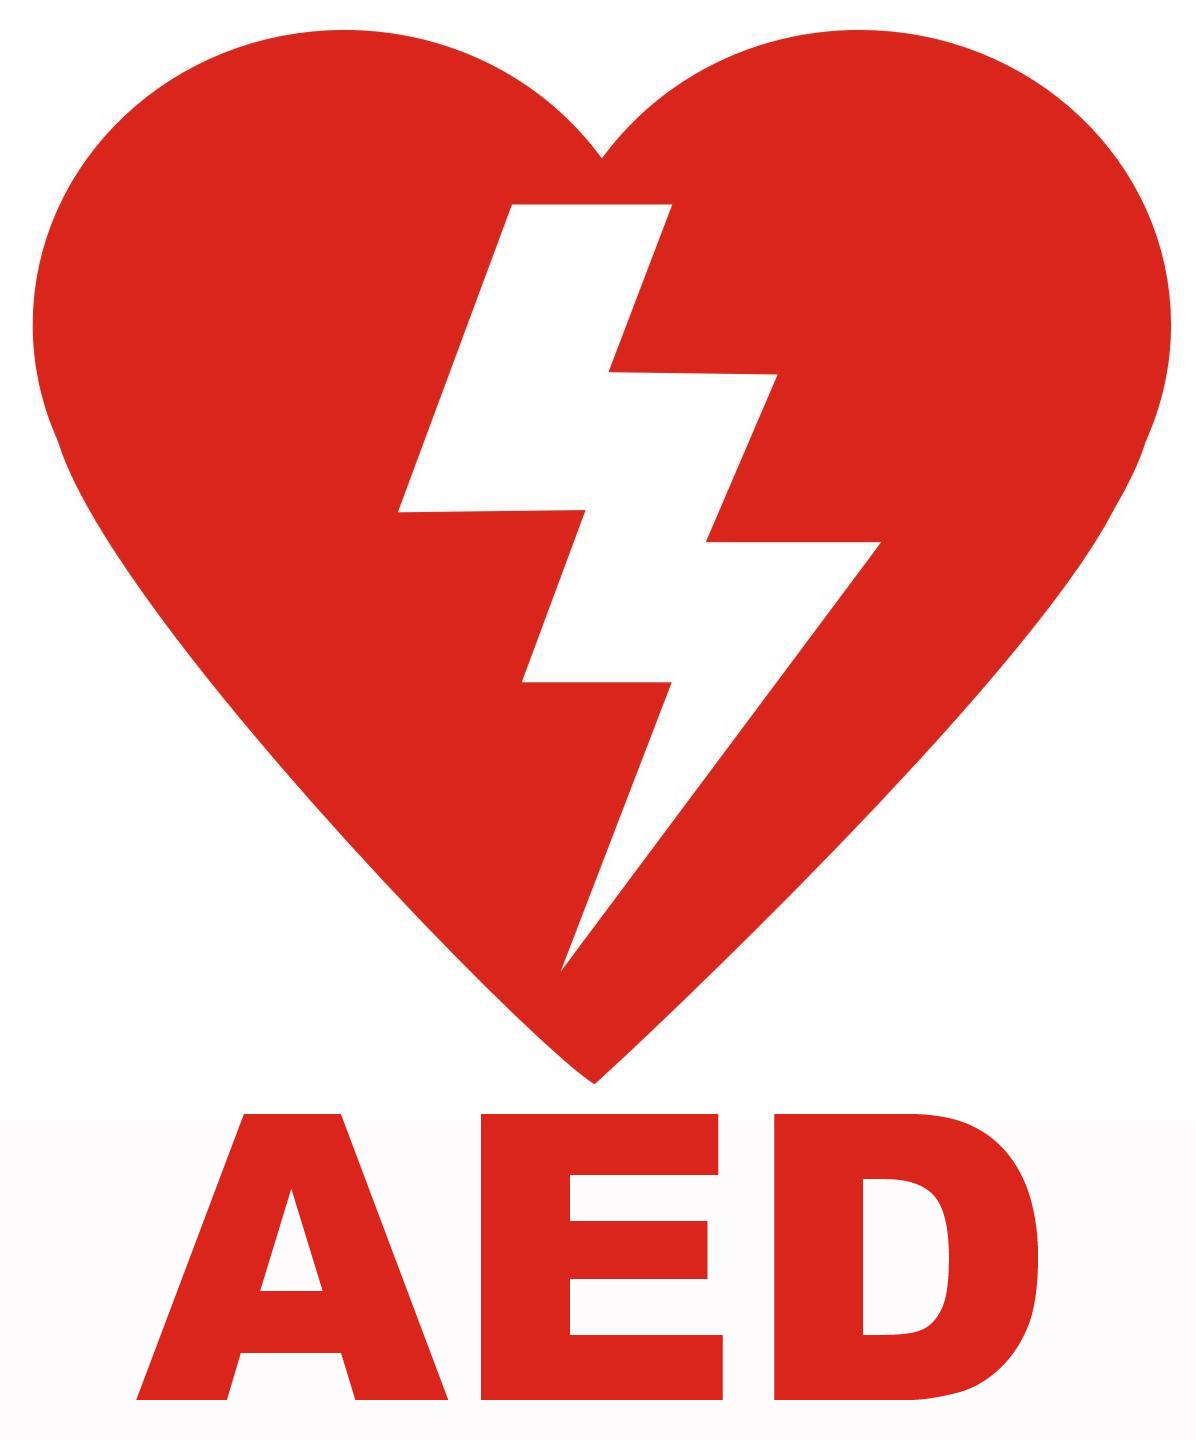 AED Machine